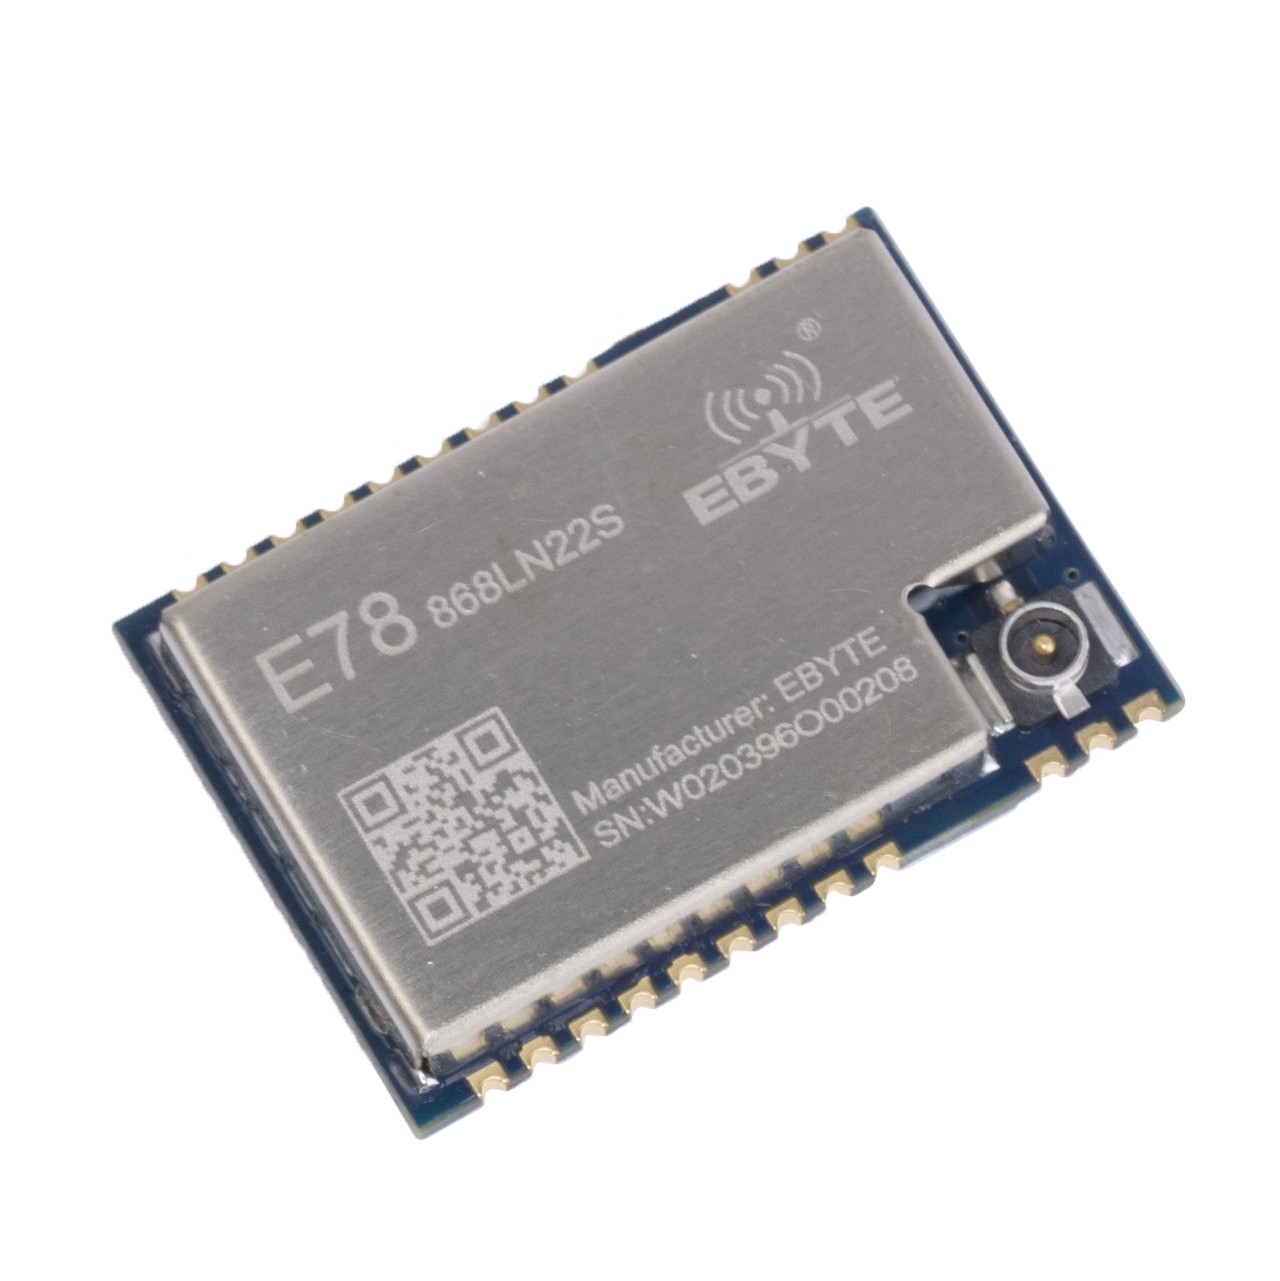 E78-868LN22S (Ebyte) SoC module on chip ASR6501 850-925MHz SMD